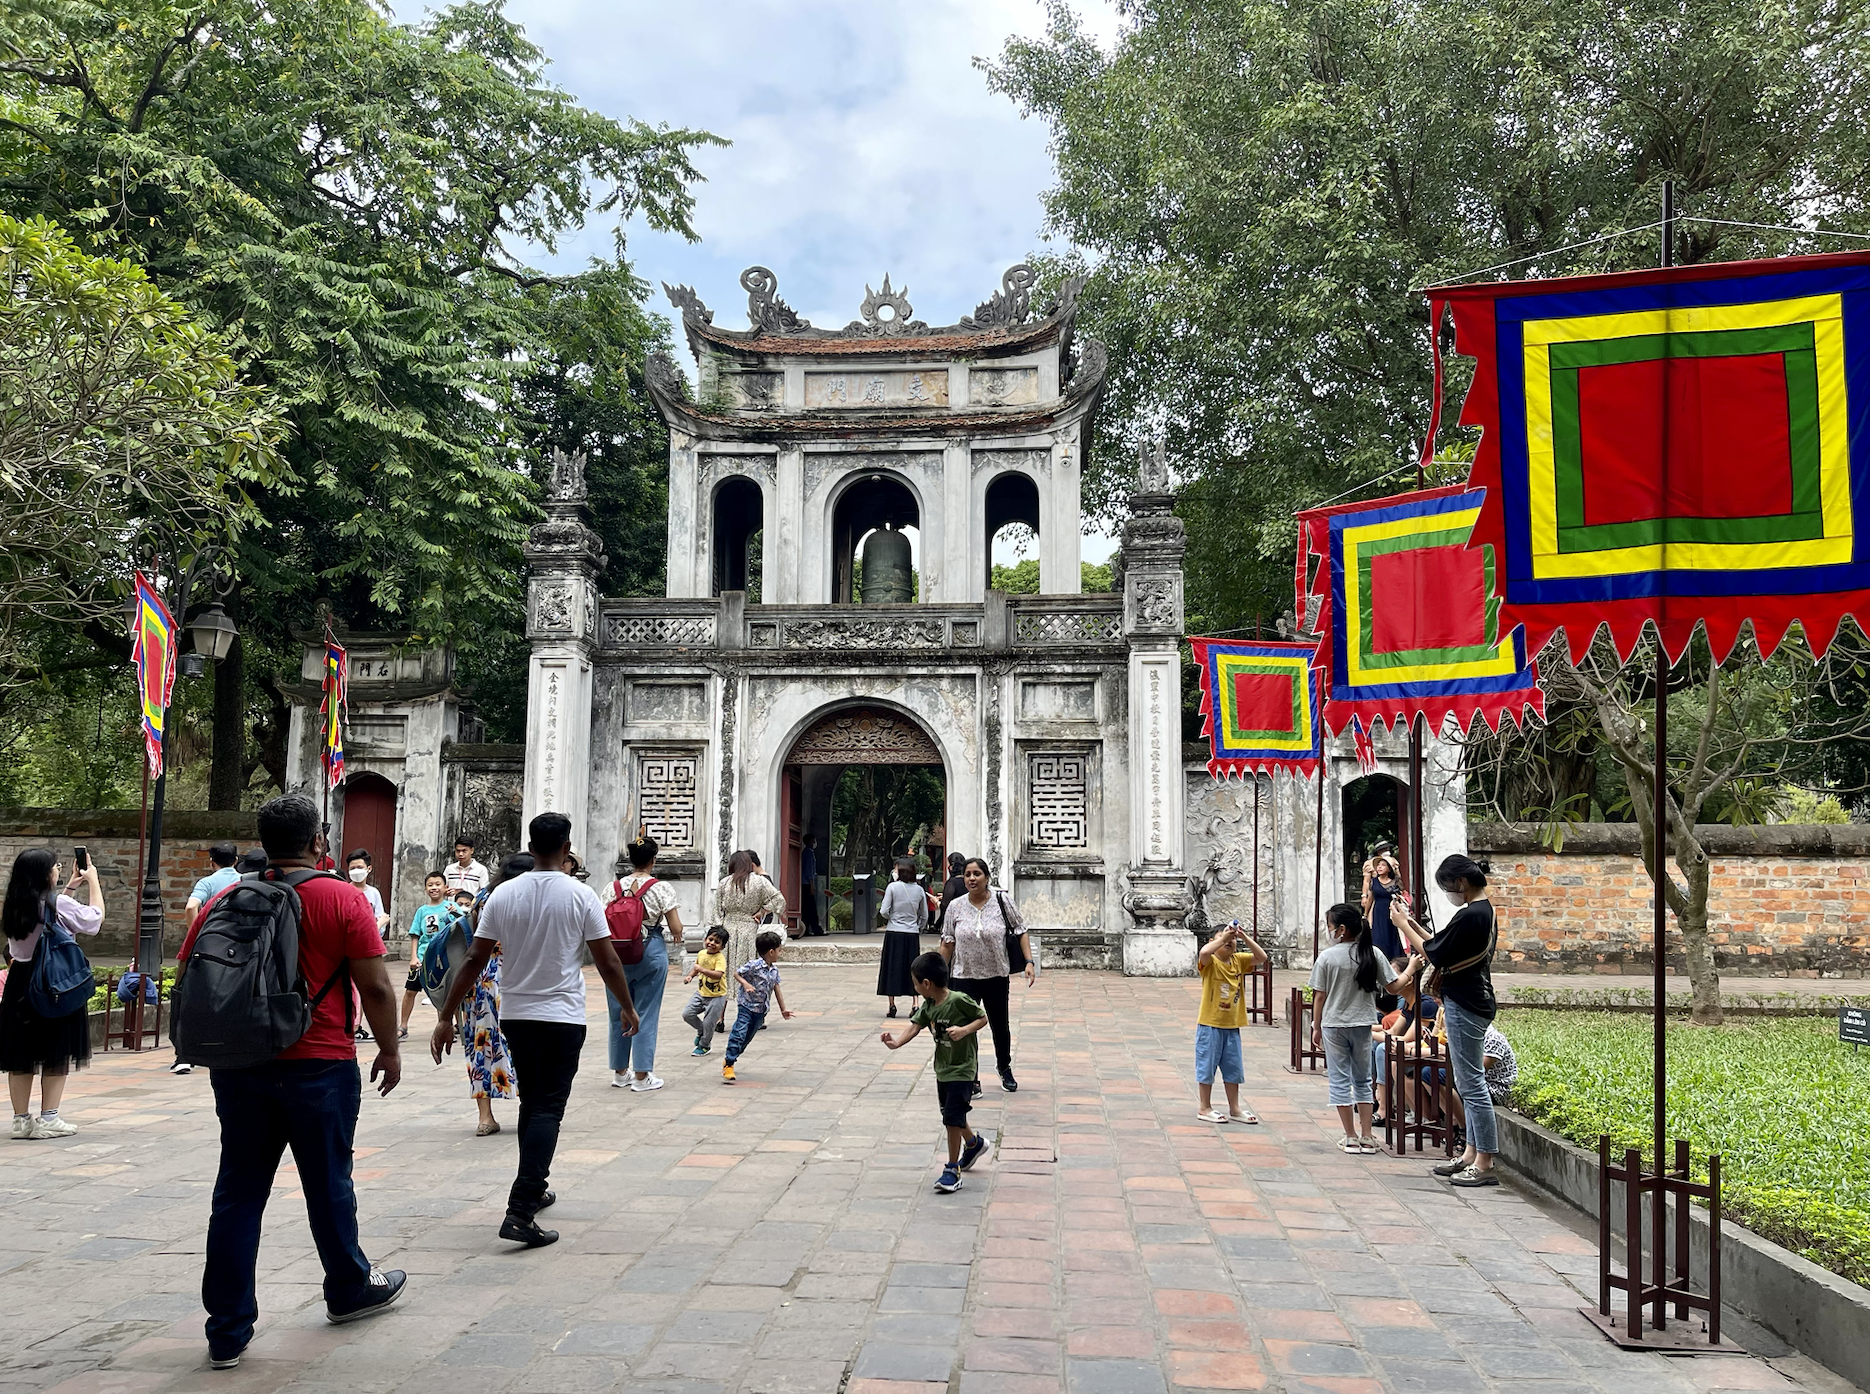 Temple Of Literature, Hanoi, Vietnam-10-day Vietnam itinerary